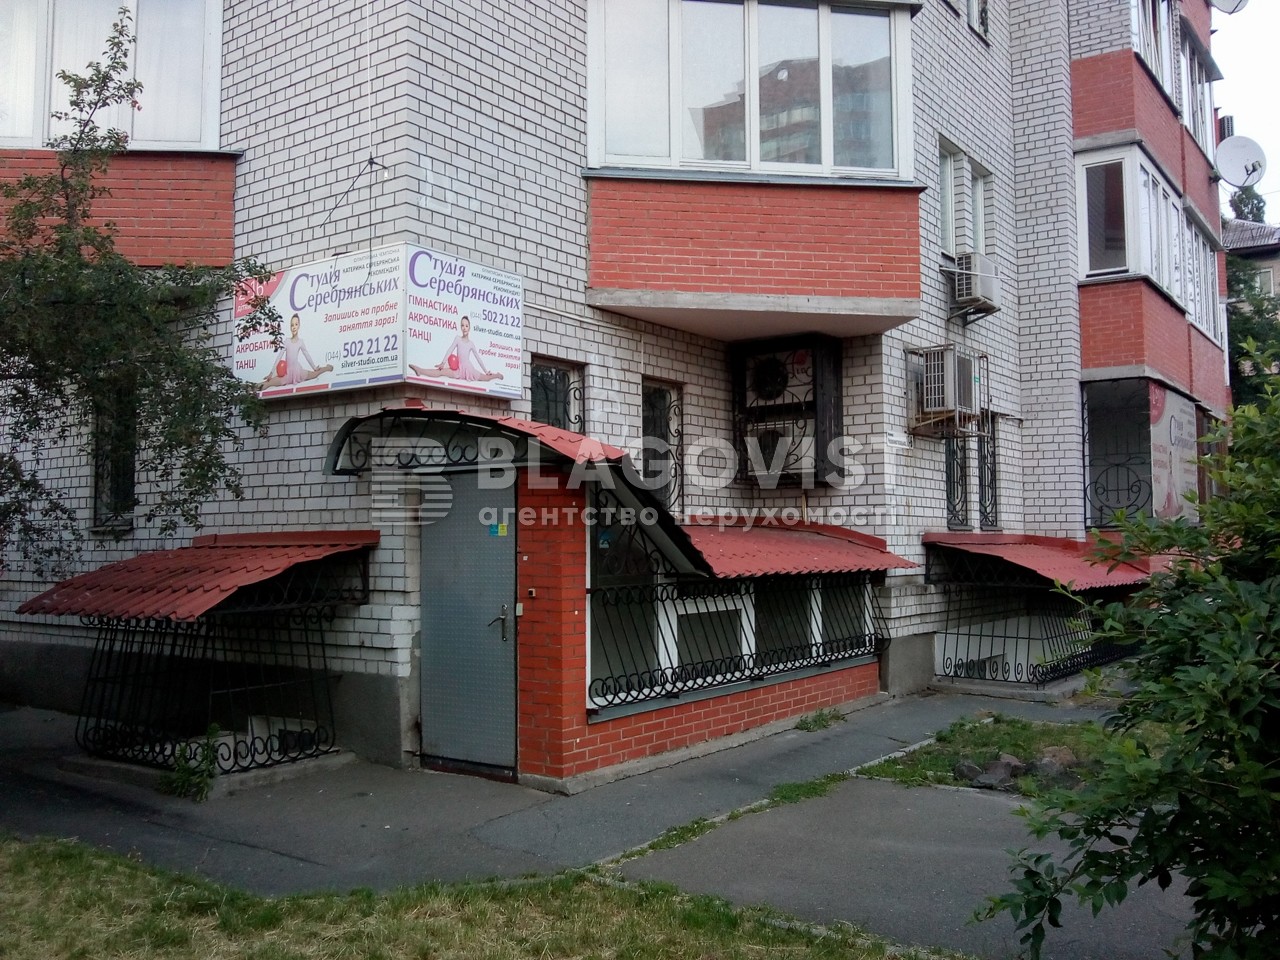  Нежилое помещение, Красноткацкая, Киев, G-629771 - Фото 5